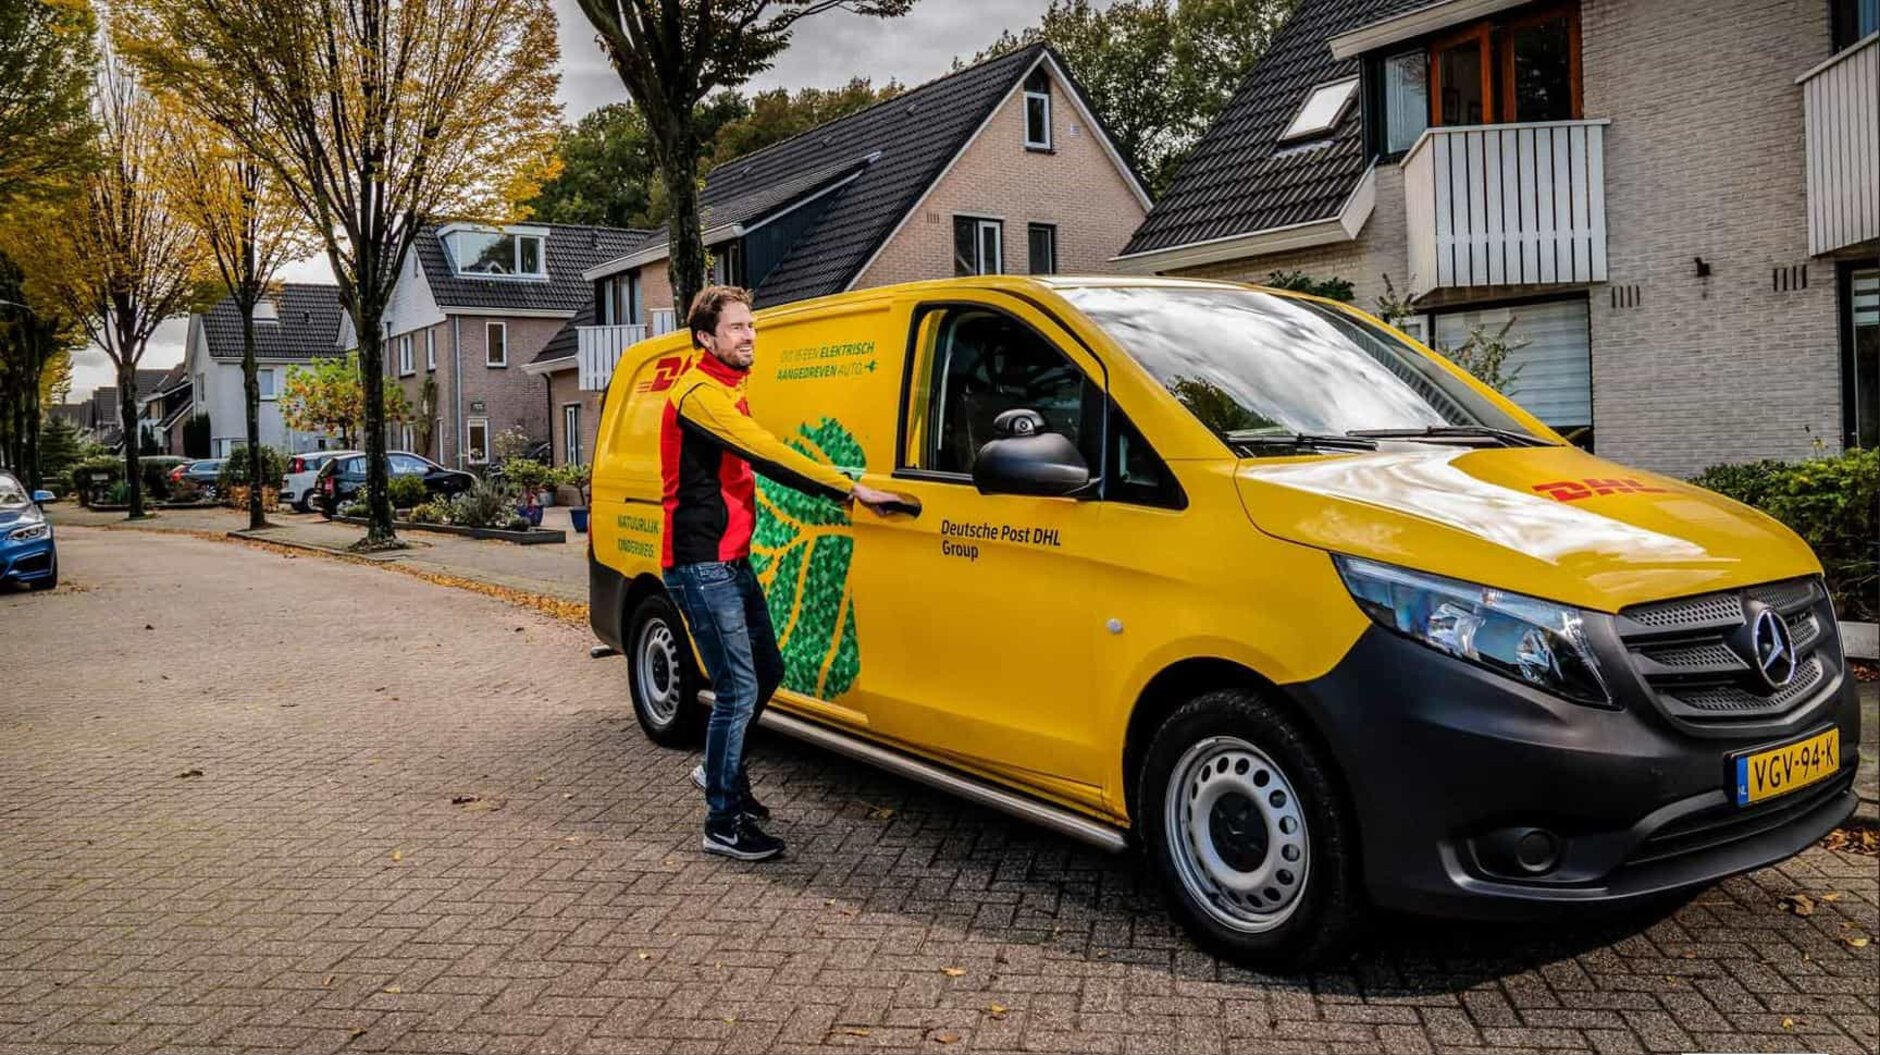 Het vertrouwde DHL-logo met de belofte: Morgen in huis in Nederland met Ace & Taylor. Snel, betrouwbaar en moeiteloos je haarstylingtools ontvangen.